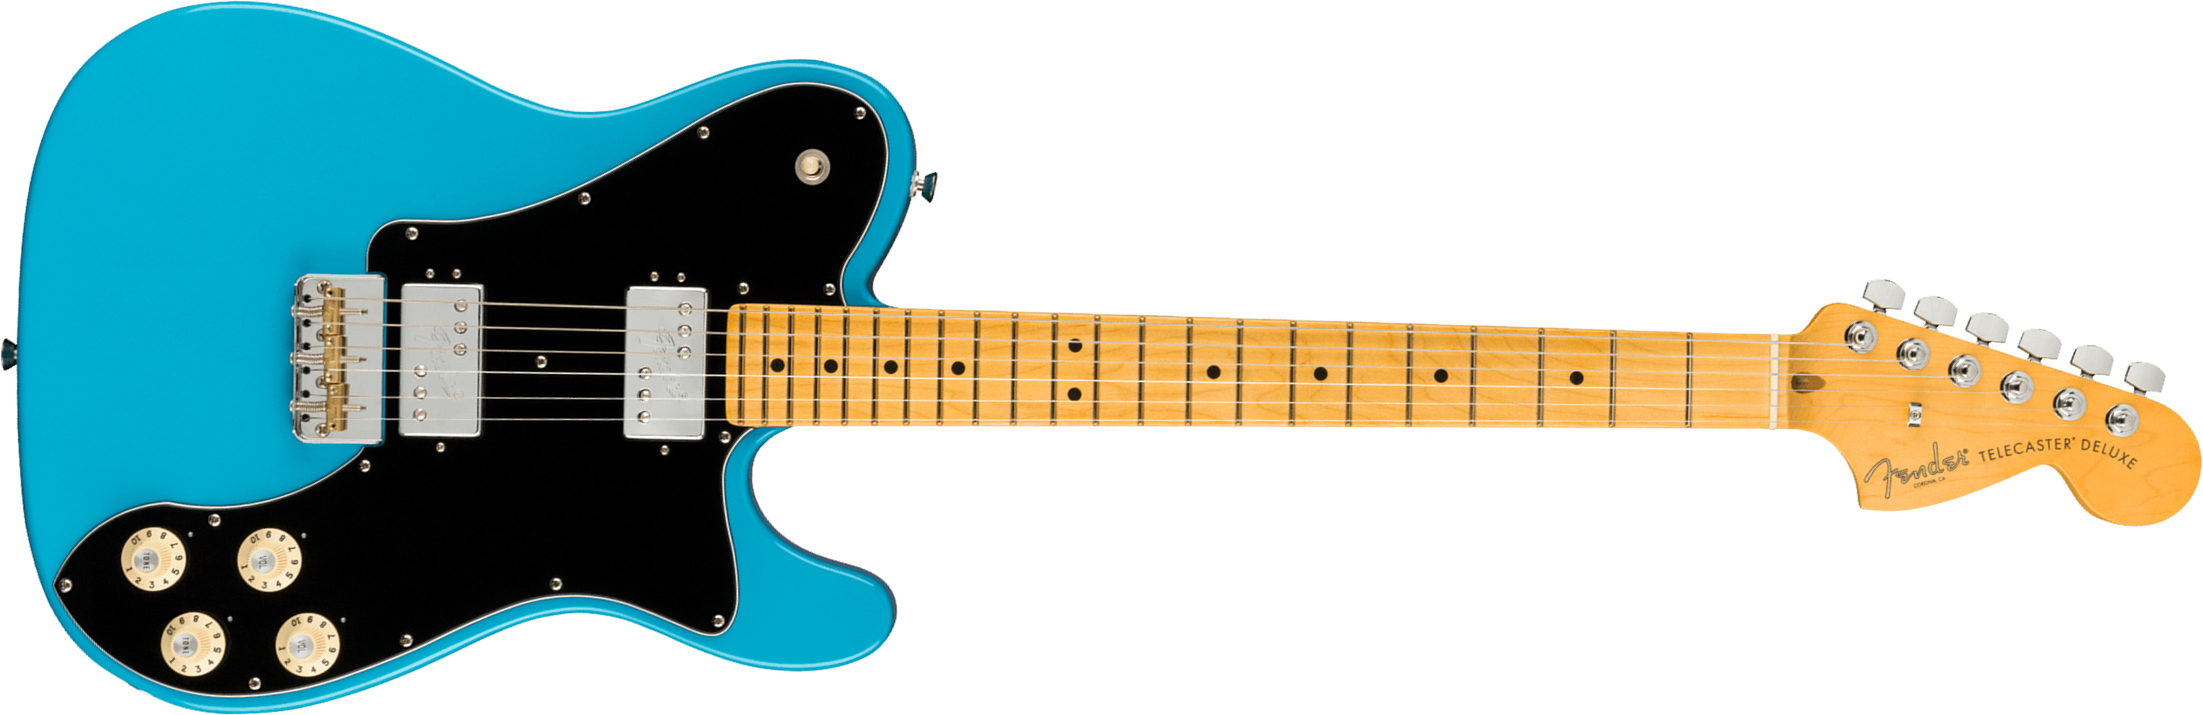 Fender Tele Deluxe American Professional Ii Usa Mn - Miami Blue - E-Gitarre in Teleform - Main picture